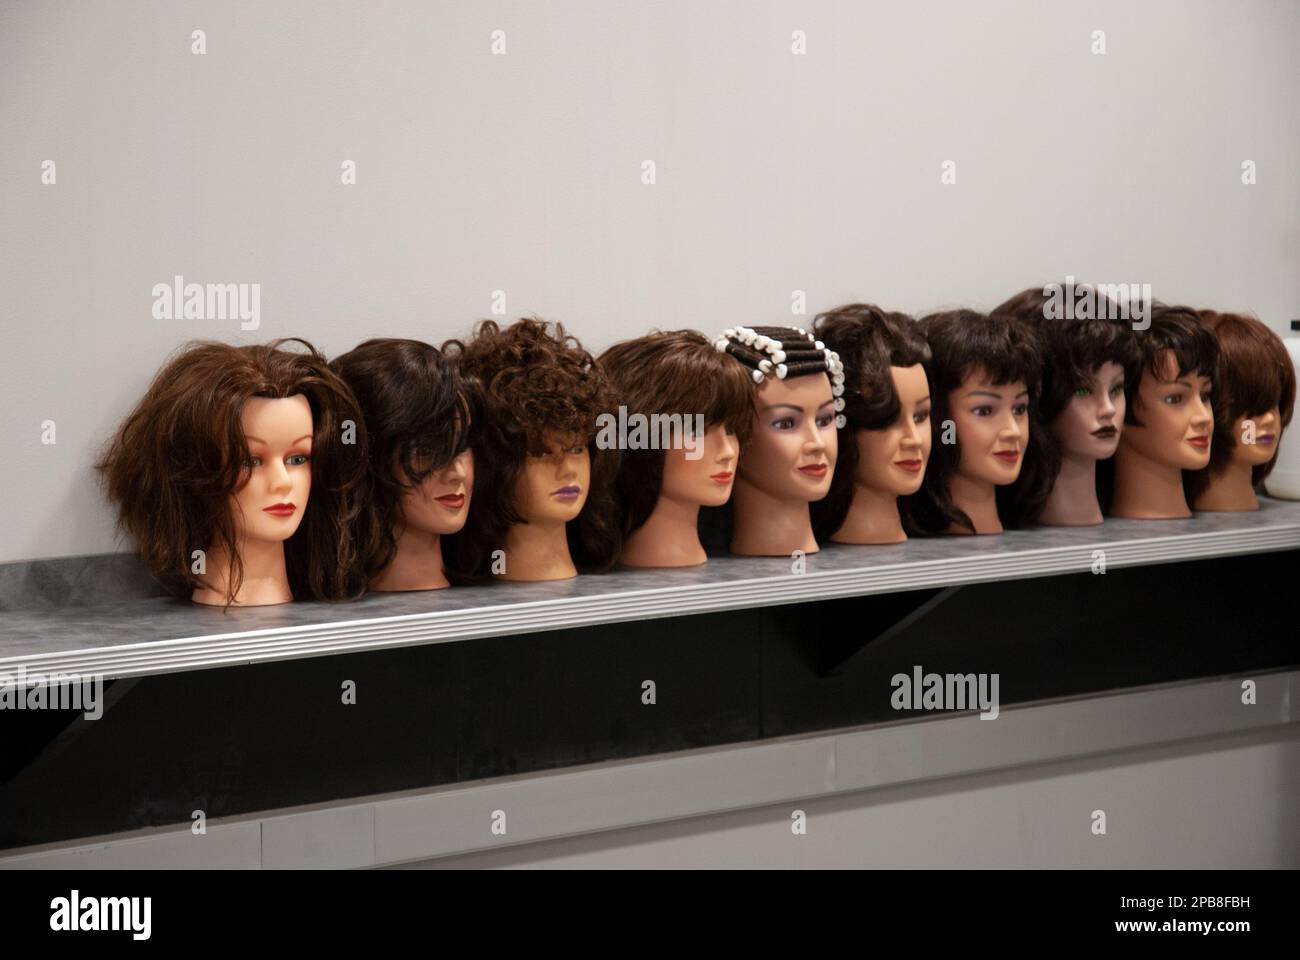 Eine Reihe von Schönheitsköpfen mit verschiedenen Frisuren, hergestellt von Studenten in einem Kosmetikkurs. Zur redaktionellen Verwendung. Stockfoto